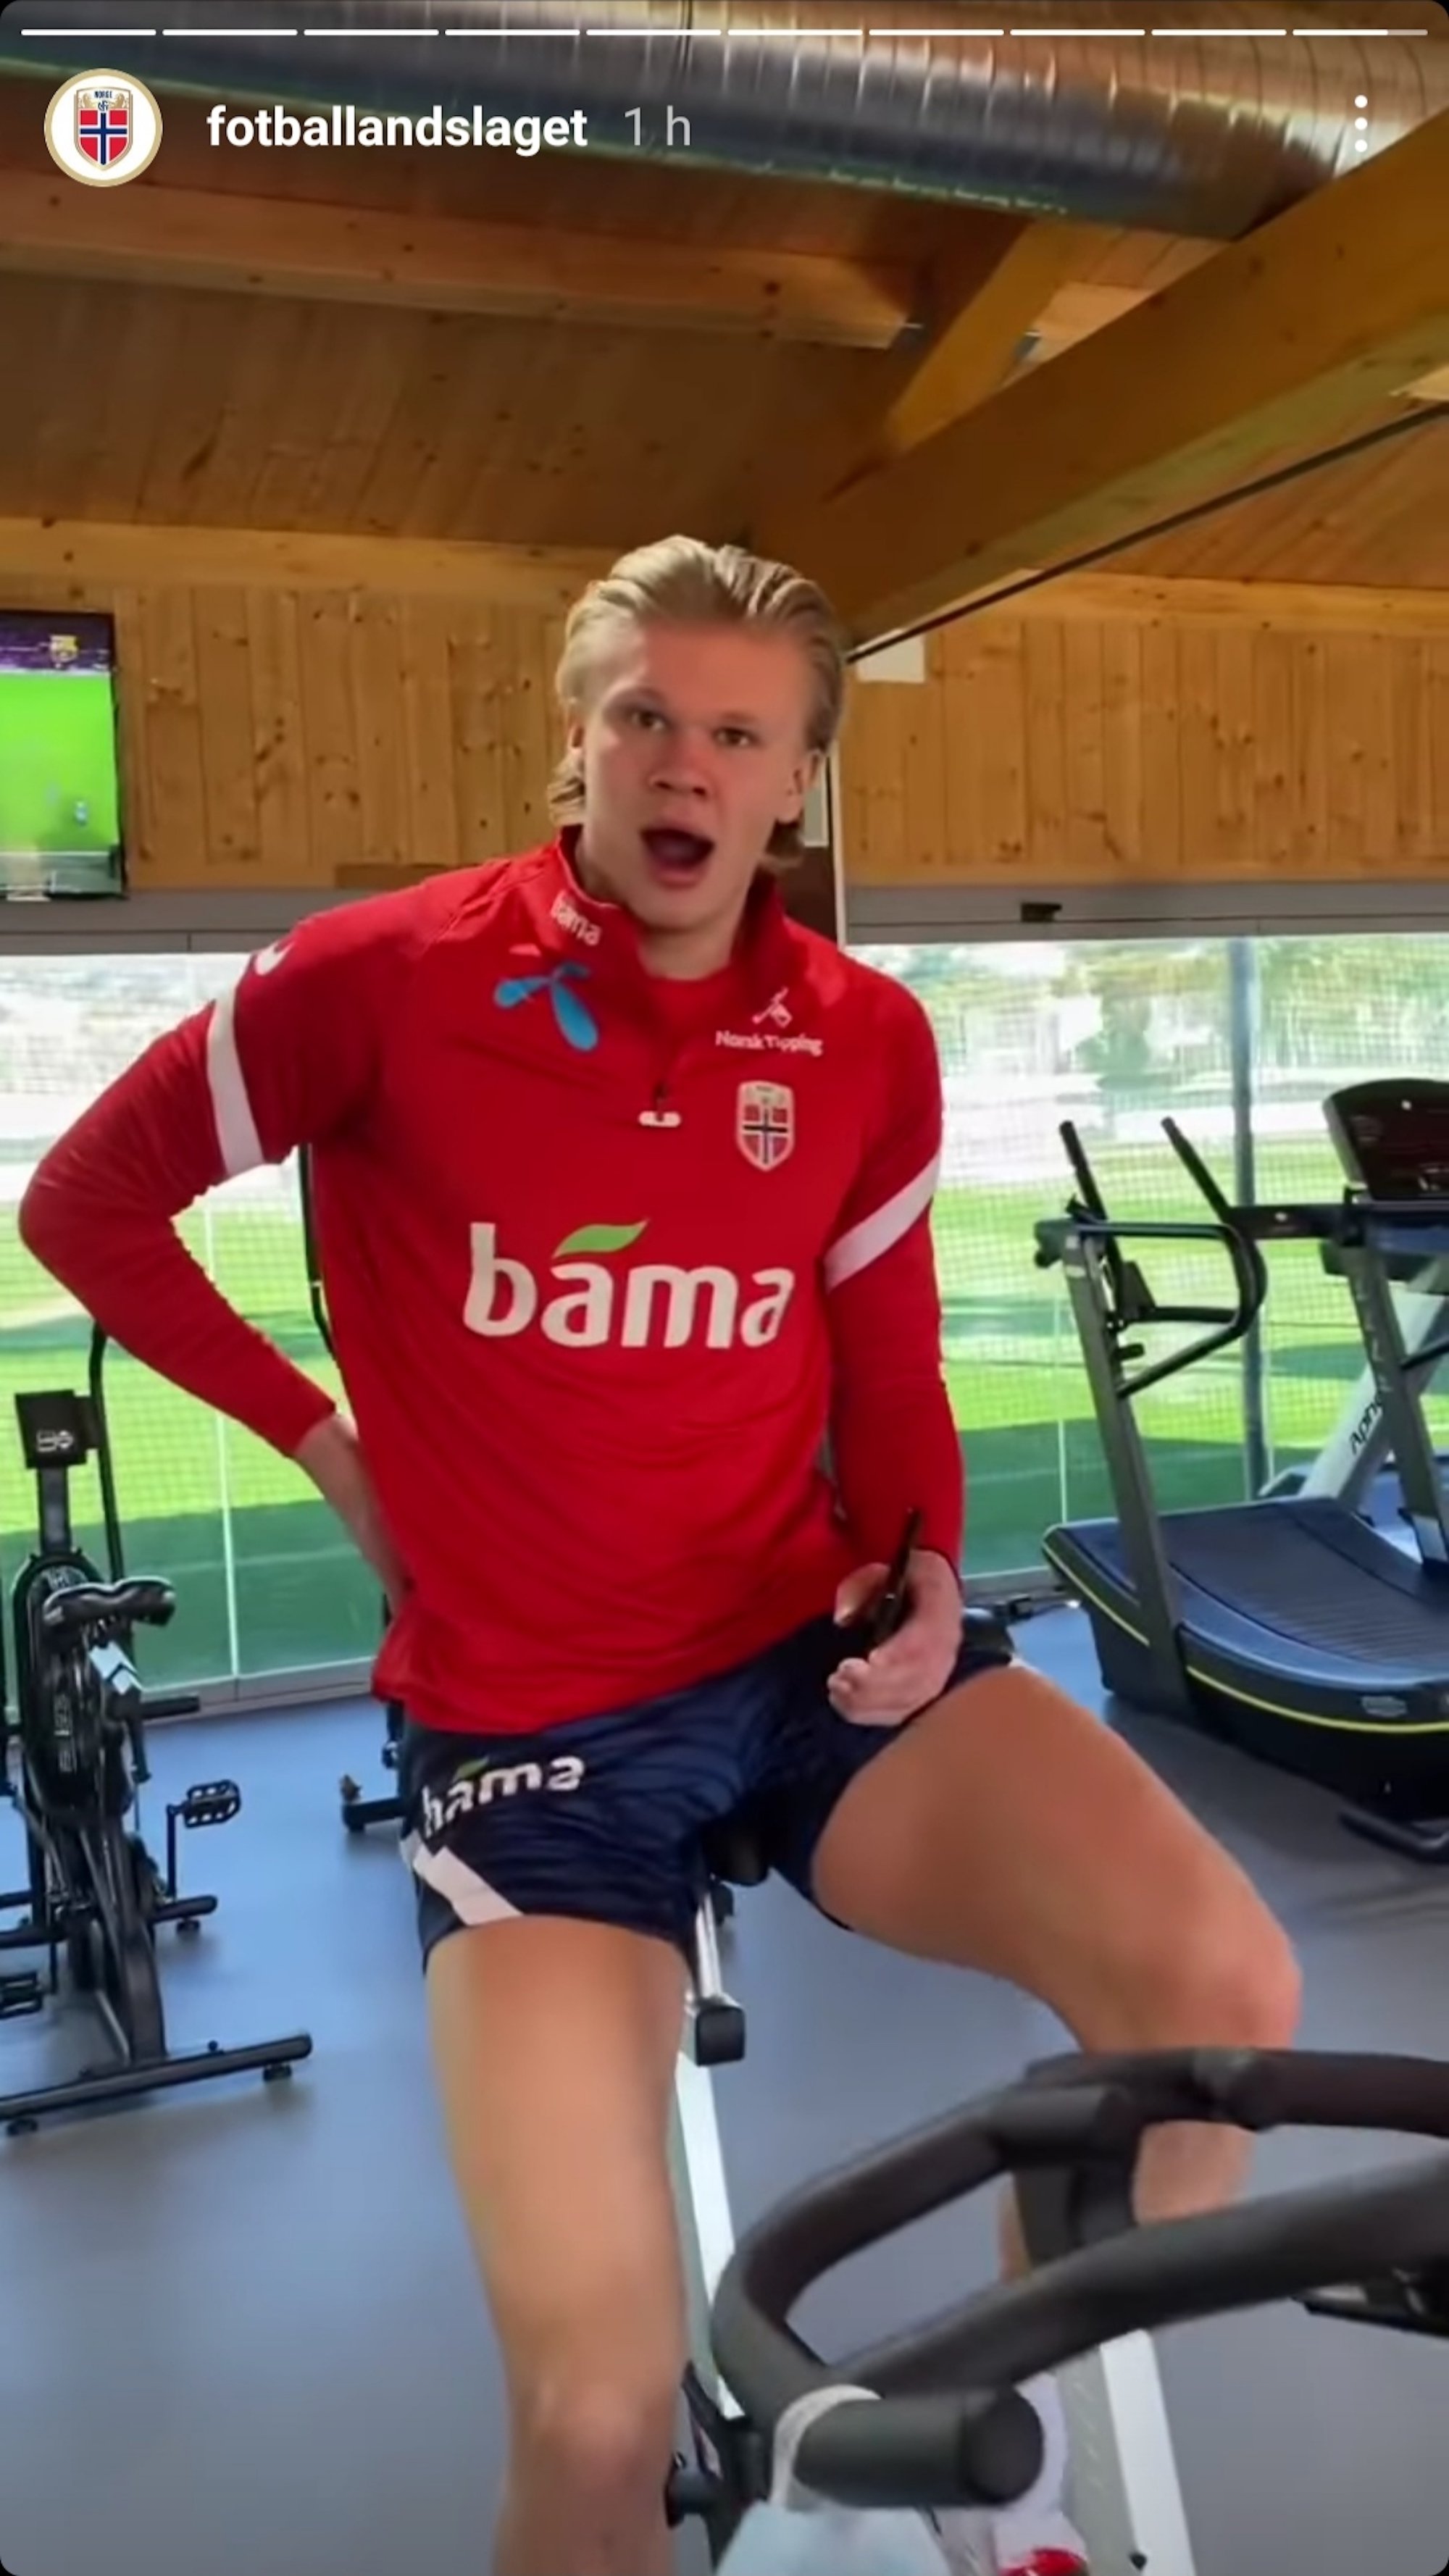 La selecció noruega de Haaland s'entrena veient BarçaTV